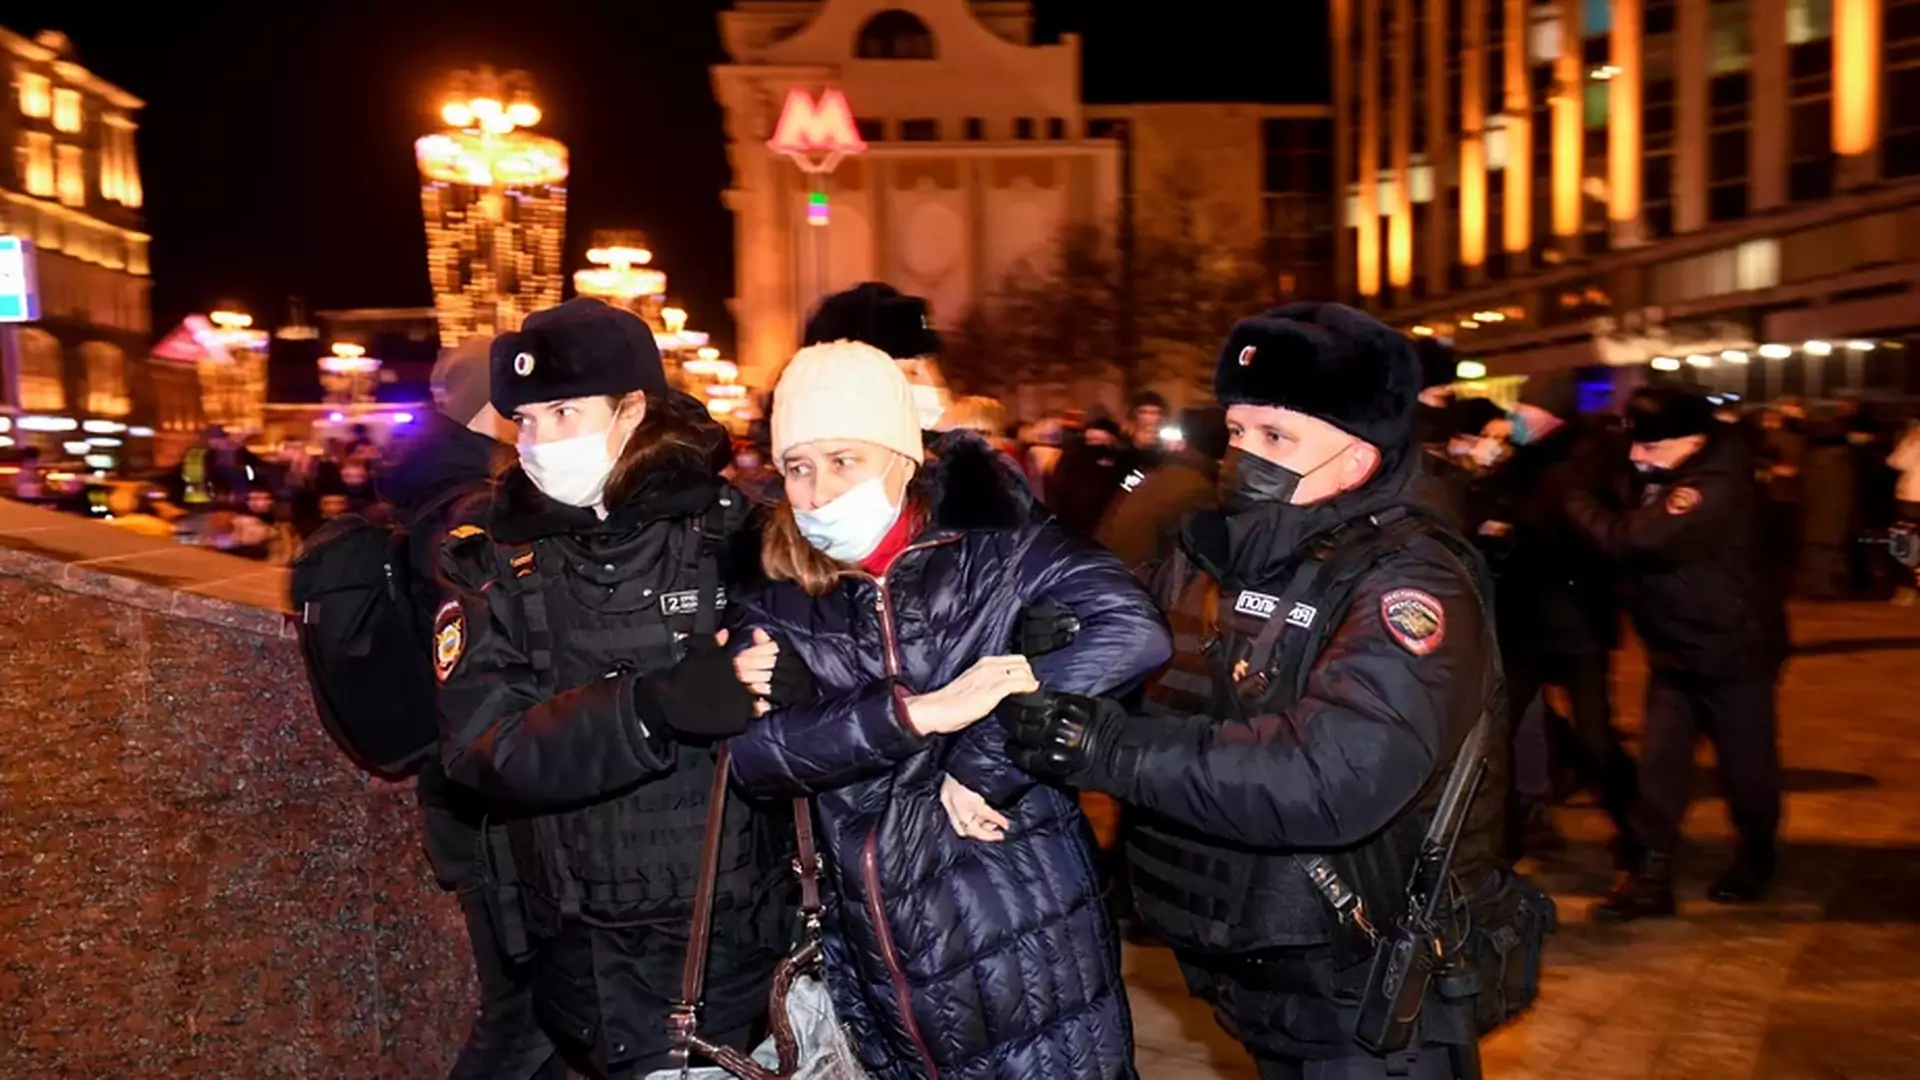 Rosjanie, którzy protestują przeciwko wojnie w Ukrainie, trafiają do aresztów